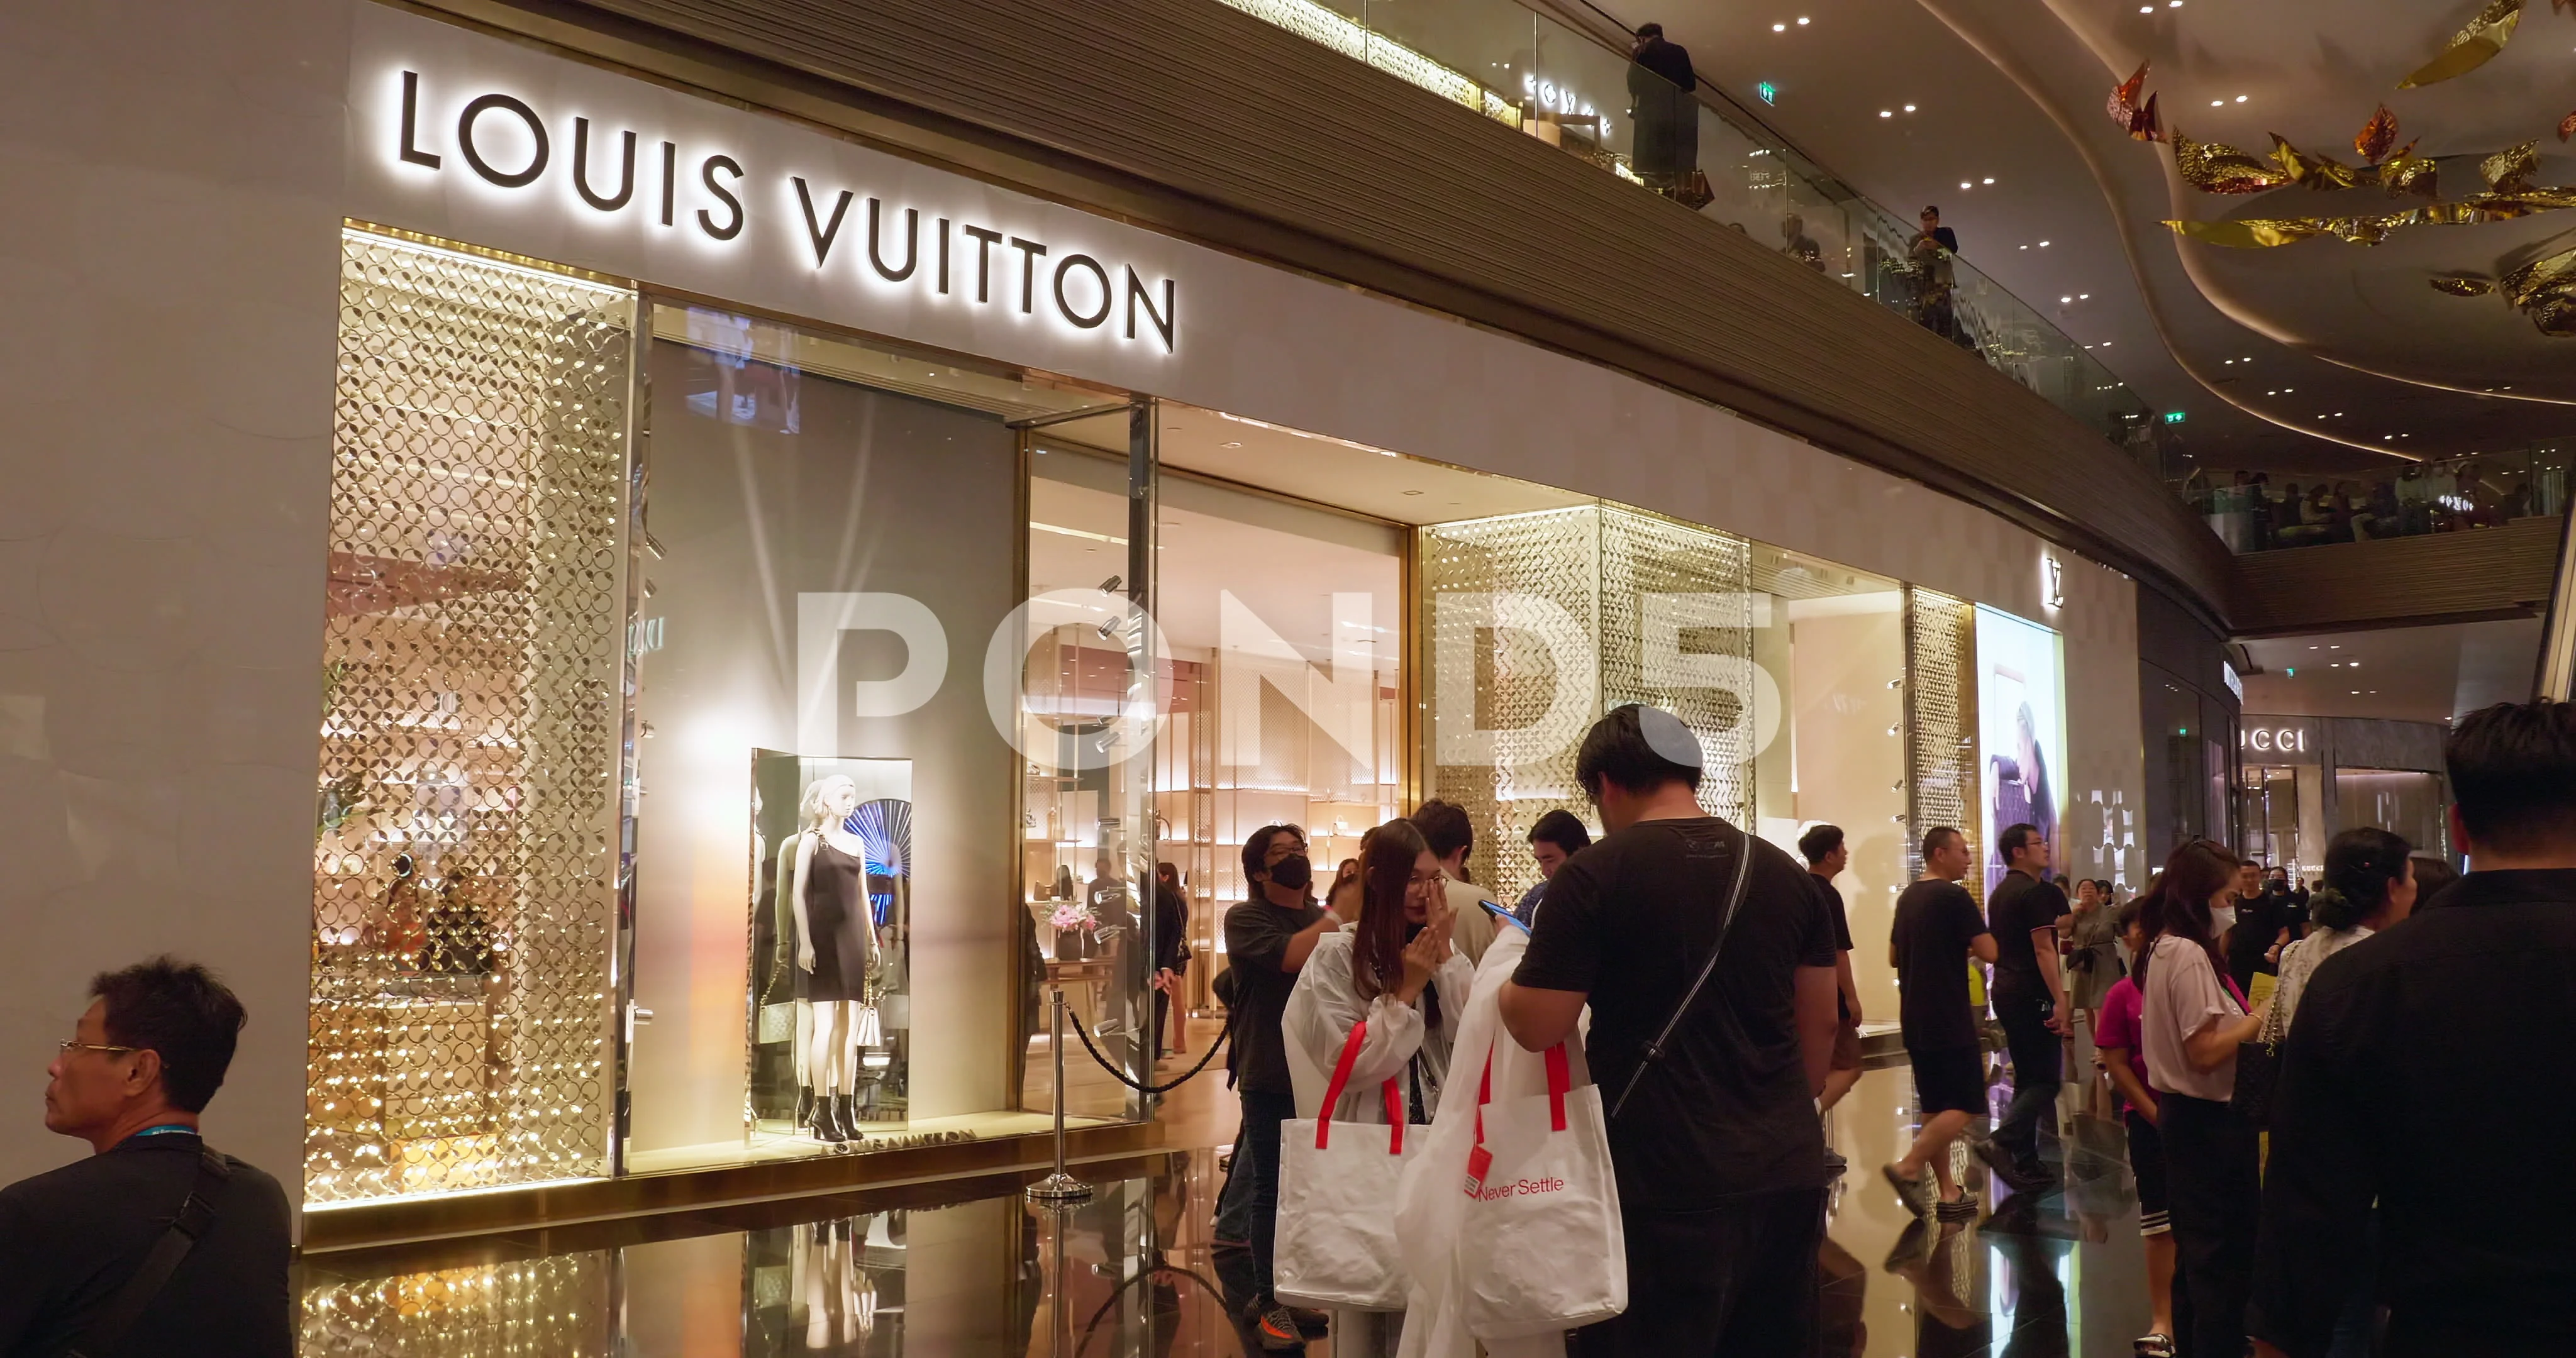 Pedestrians pass a Louis Vuitton luxury clothing boutique on Parizska  News Photo - Getty Images